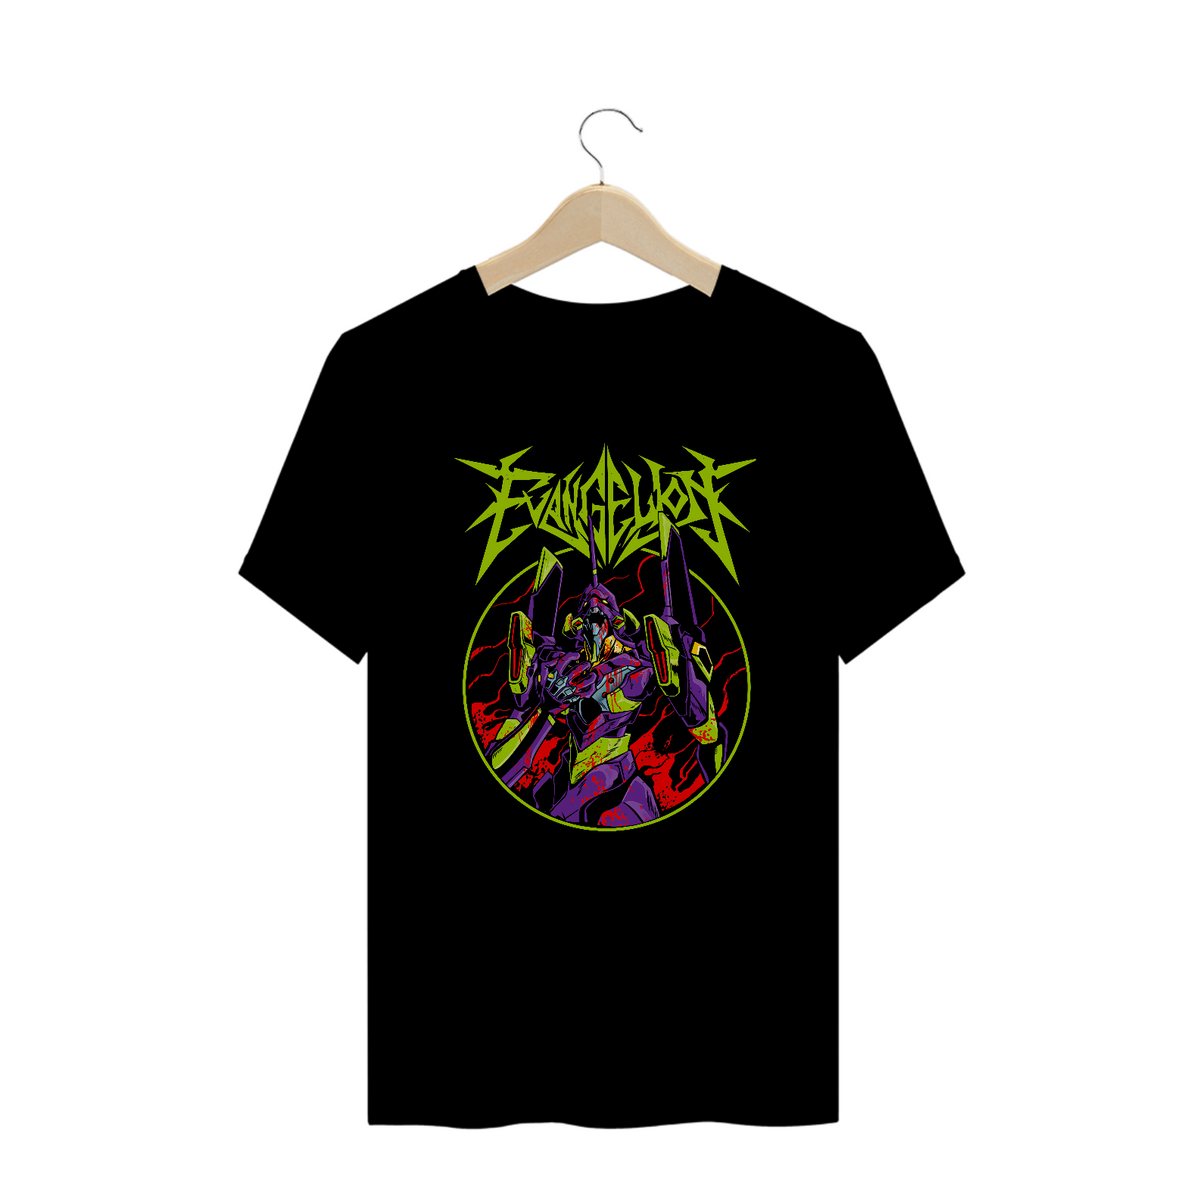 Nome do produto: Camiseta Plus Size Neon Genesis Evangelion Estampa ANIME GEEK ROCK